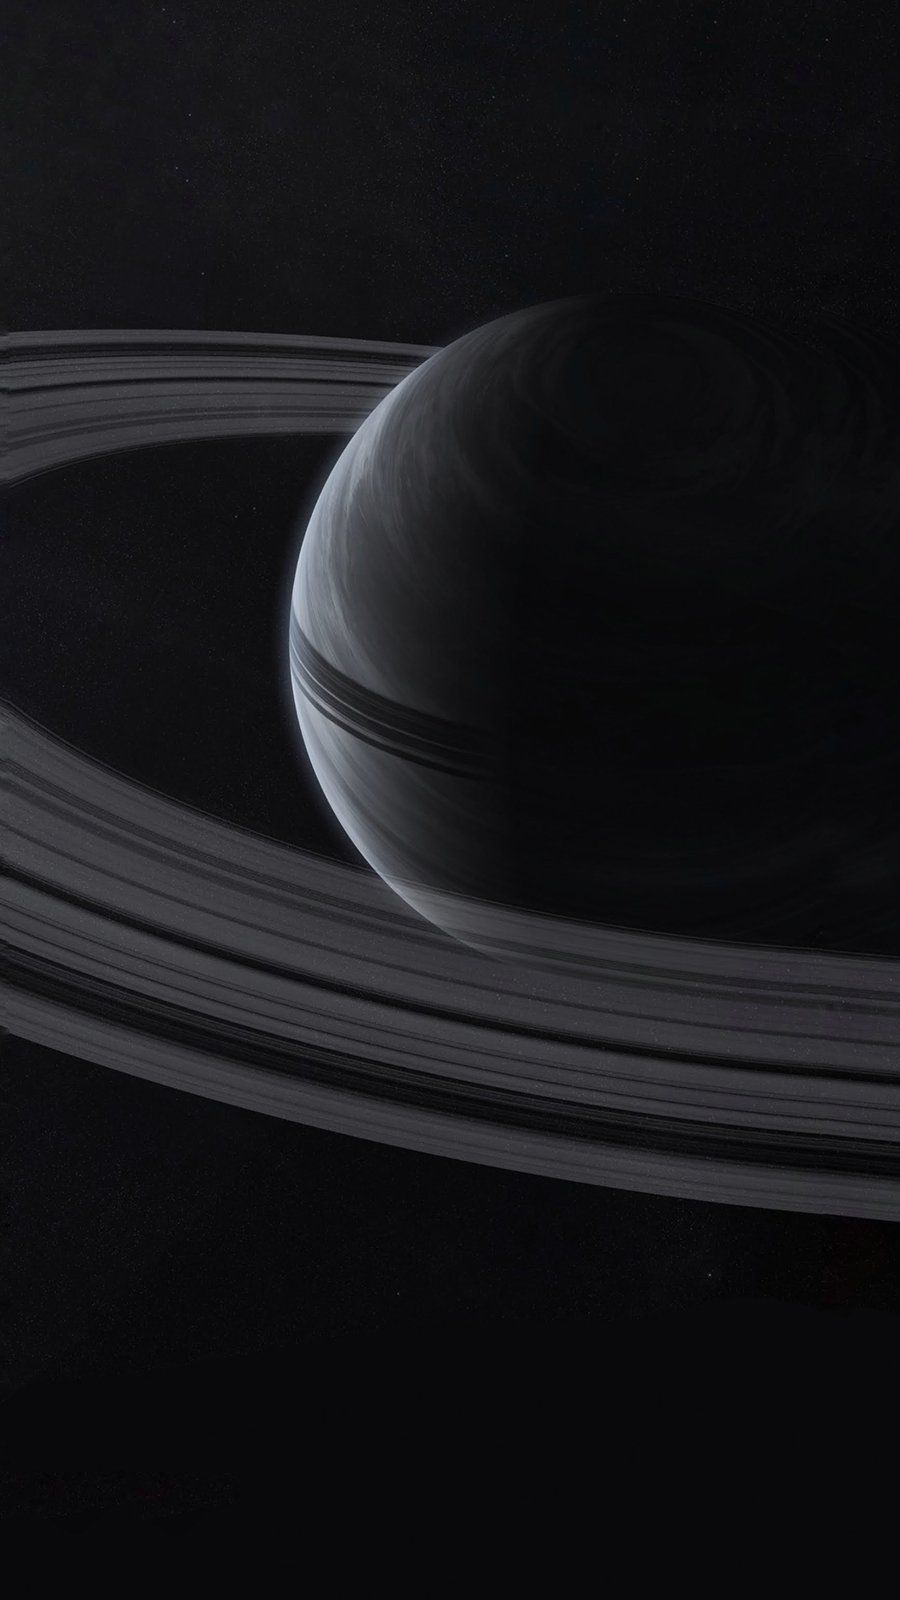 Aesthetic Black Saturn Wallpaper Download